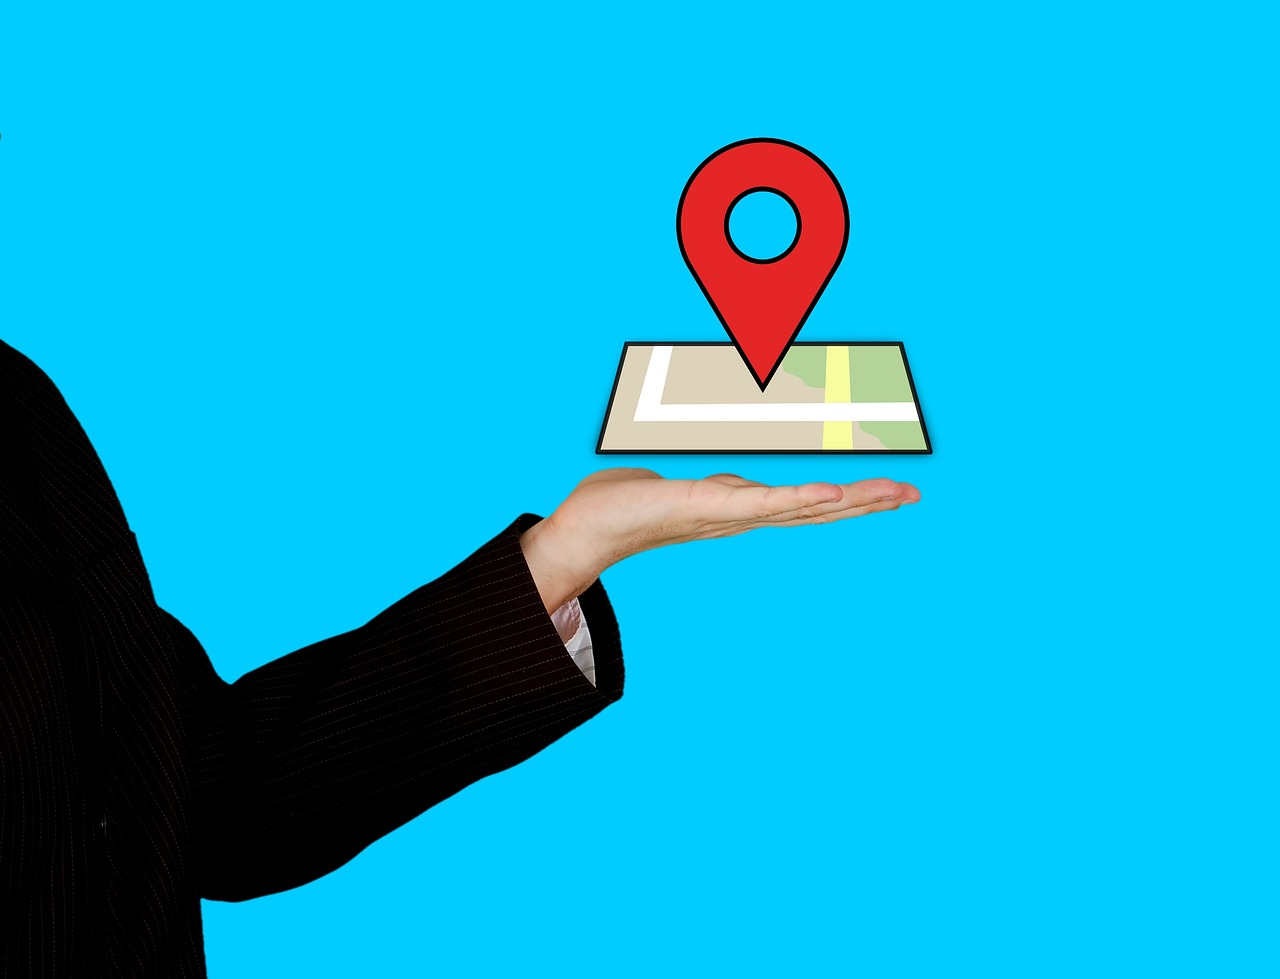 Descubre cómo rastrear un celular gratis con Google Maps